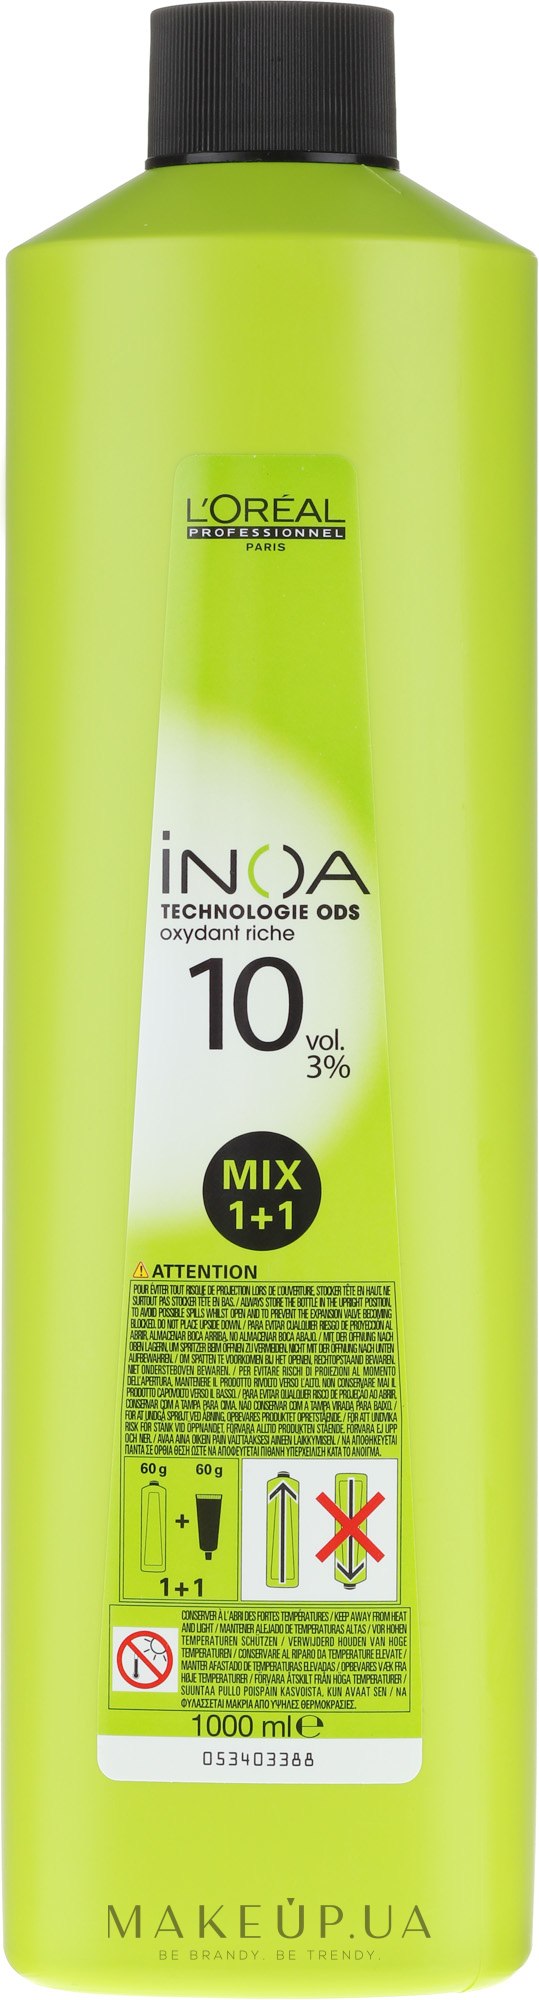 Оксидант - L'Oreal Professionnel Inoa Oxydant 3% 10 vol. Mix 1+1 — фото 1000ml